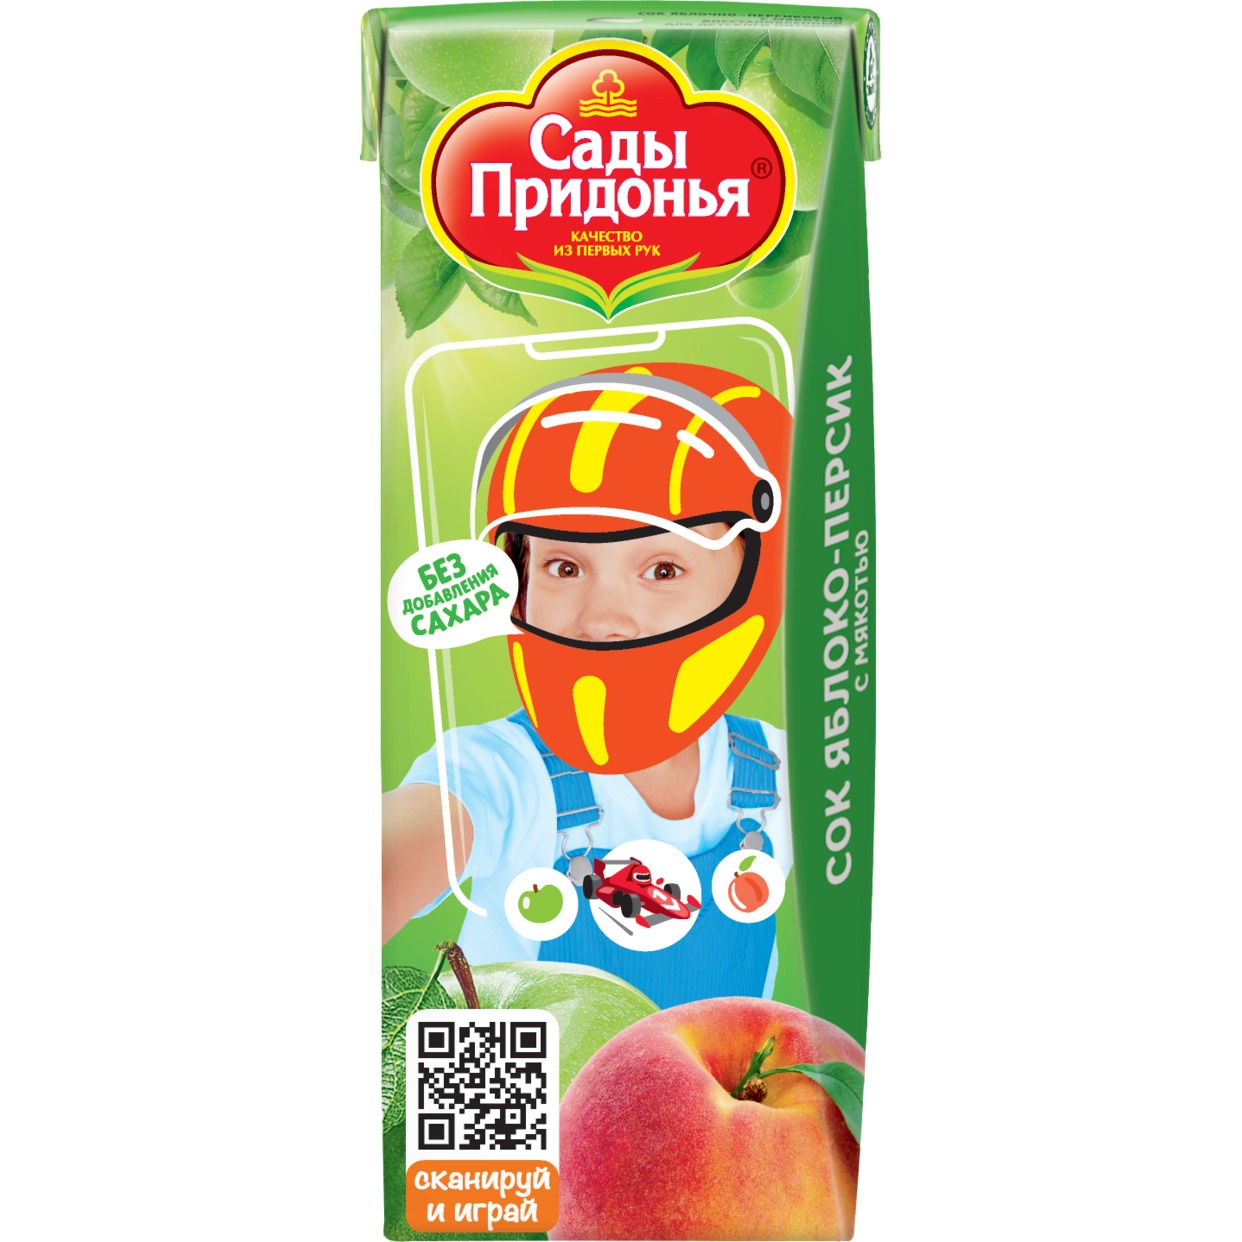 Сок Сады Придонья, яблоко-персик, 0,2 л по акции в Пятерочке